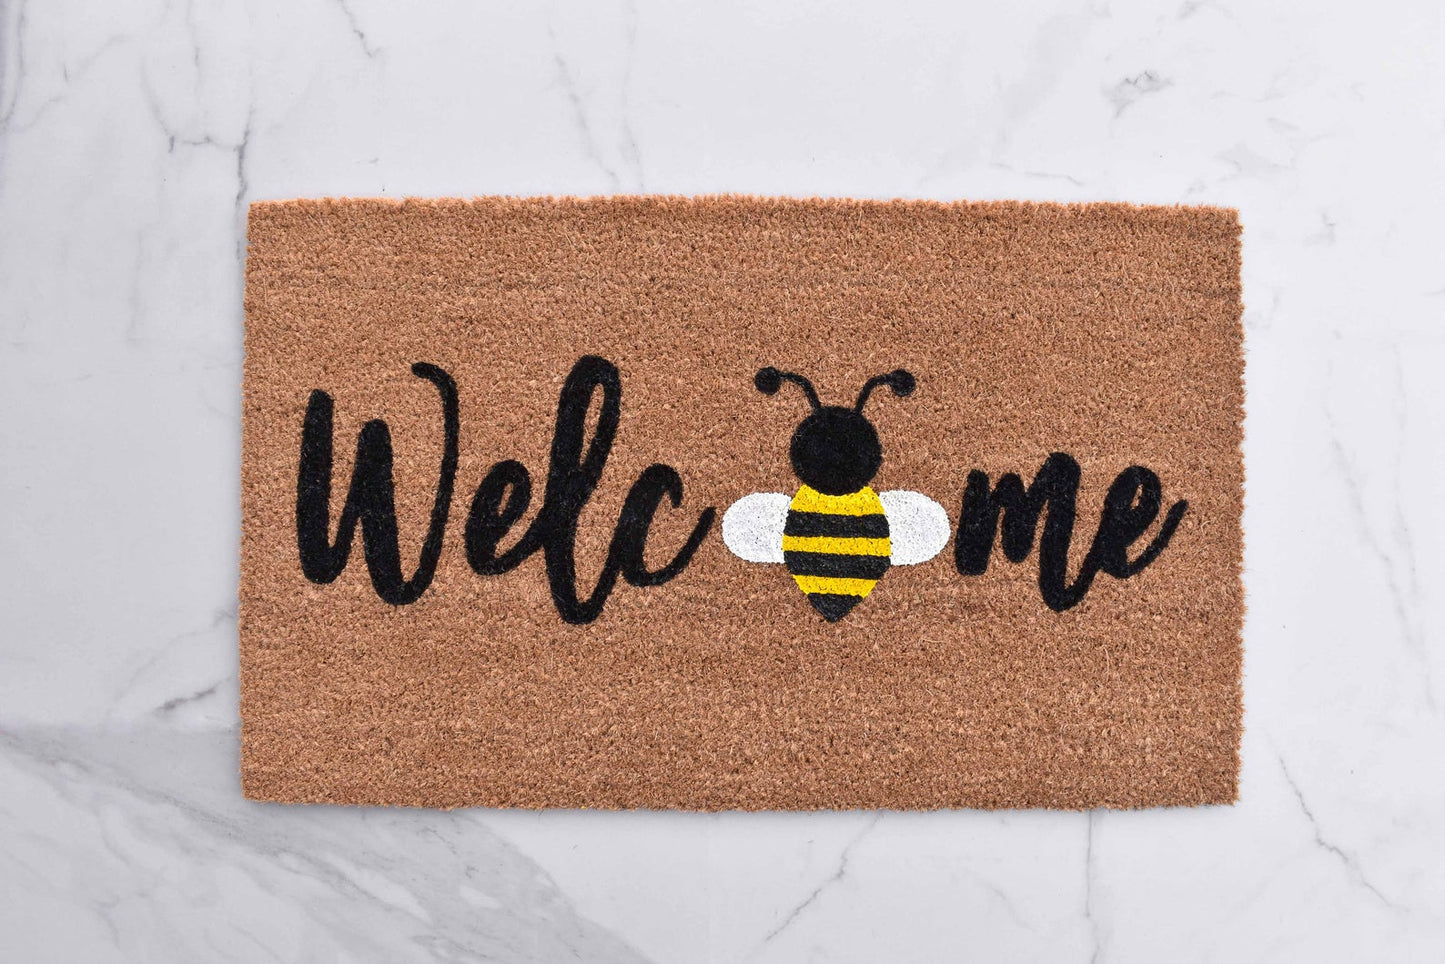 Welcome + Bumble Bee Doormat